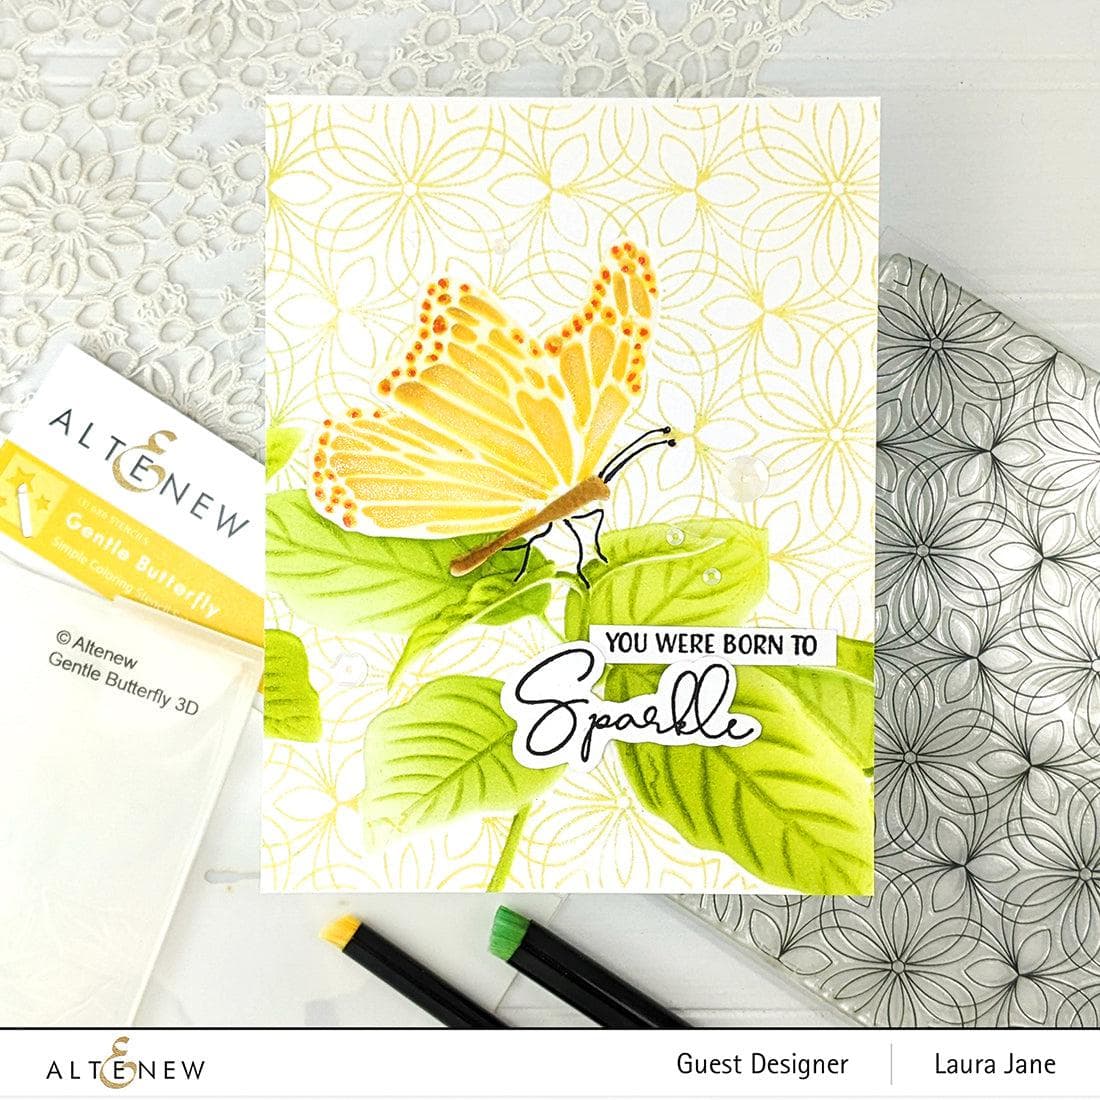 Altenew Stencil & Embossing Folder Bundle Gentle Butterfly Complete Bundle